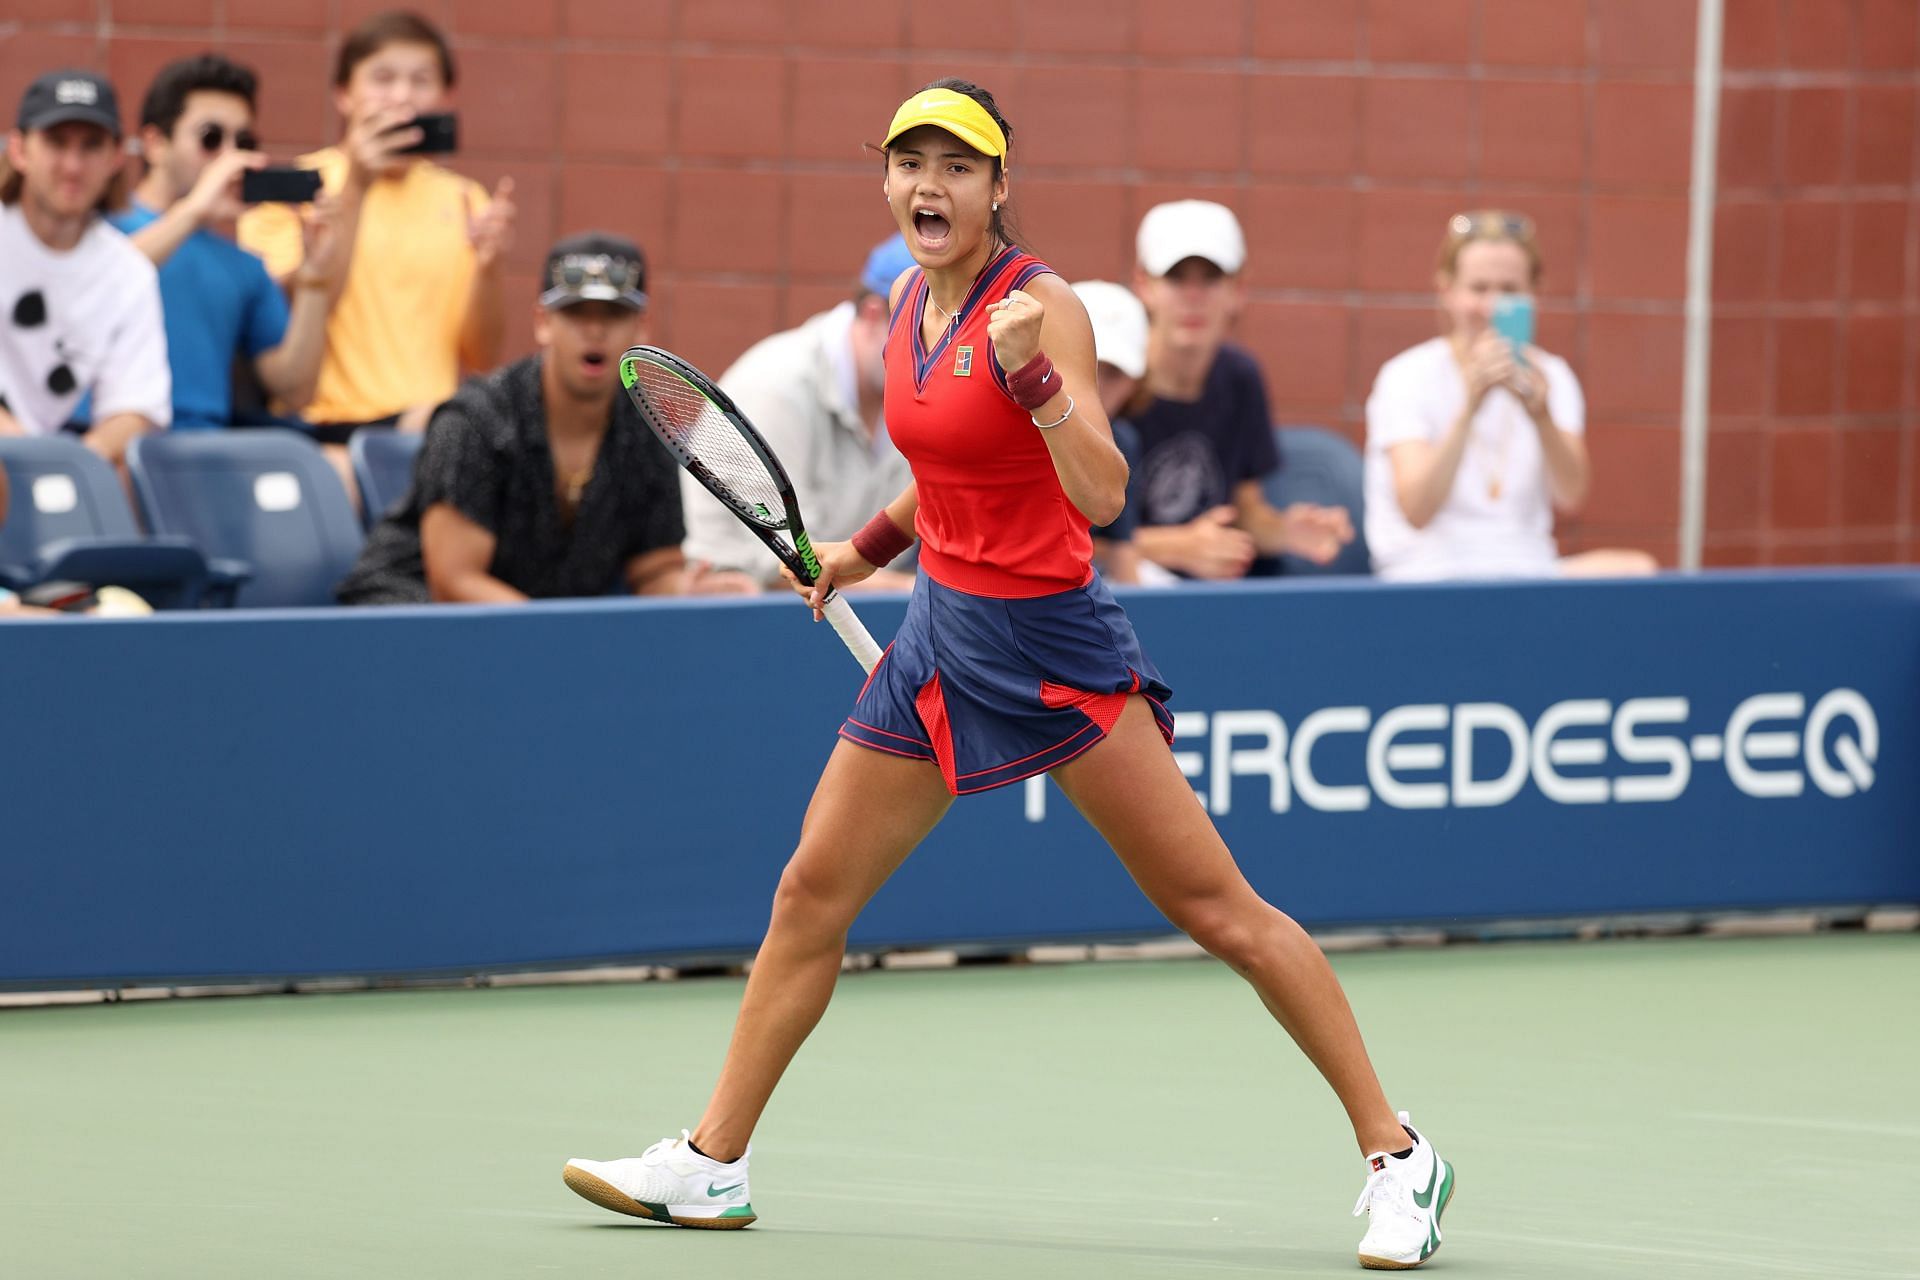 Emma Raducanu at the 2021 US Open